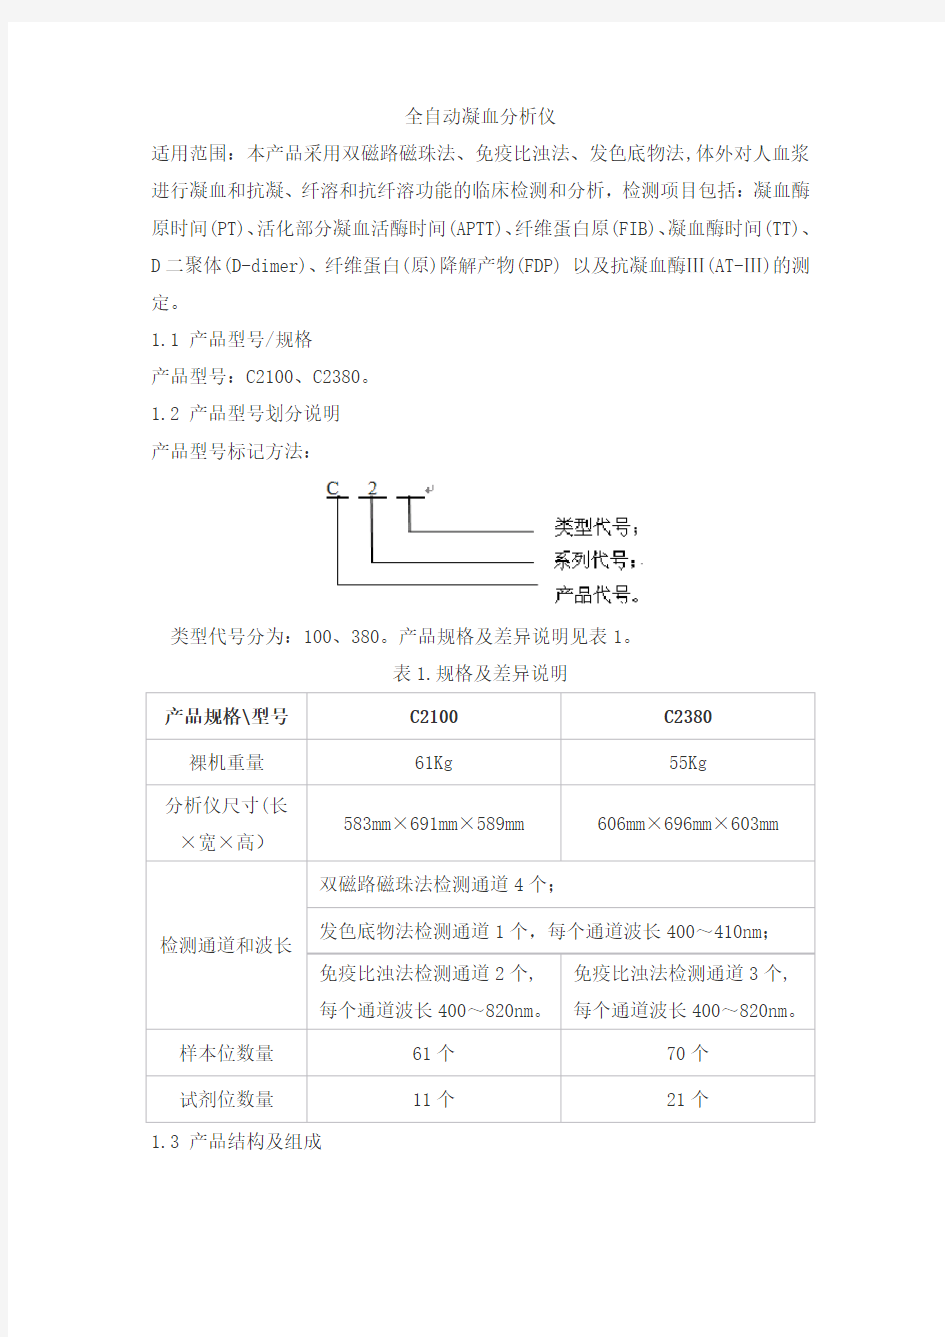 全自动凝血分析仪产品技术要求pulisheng